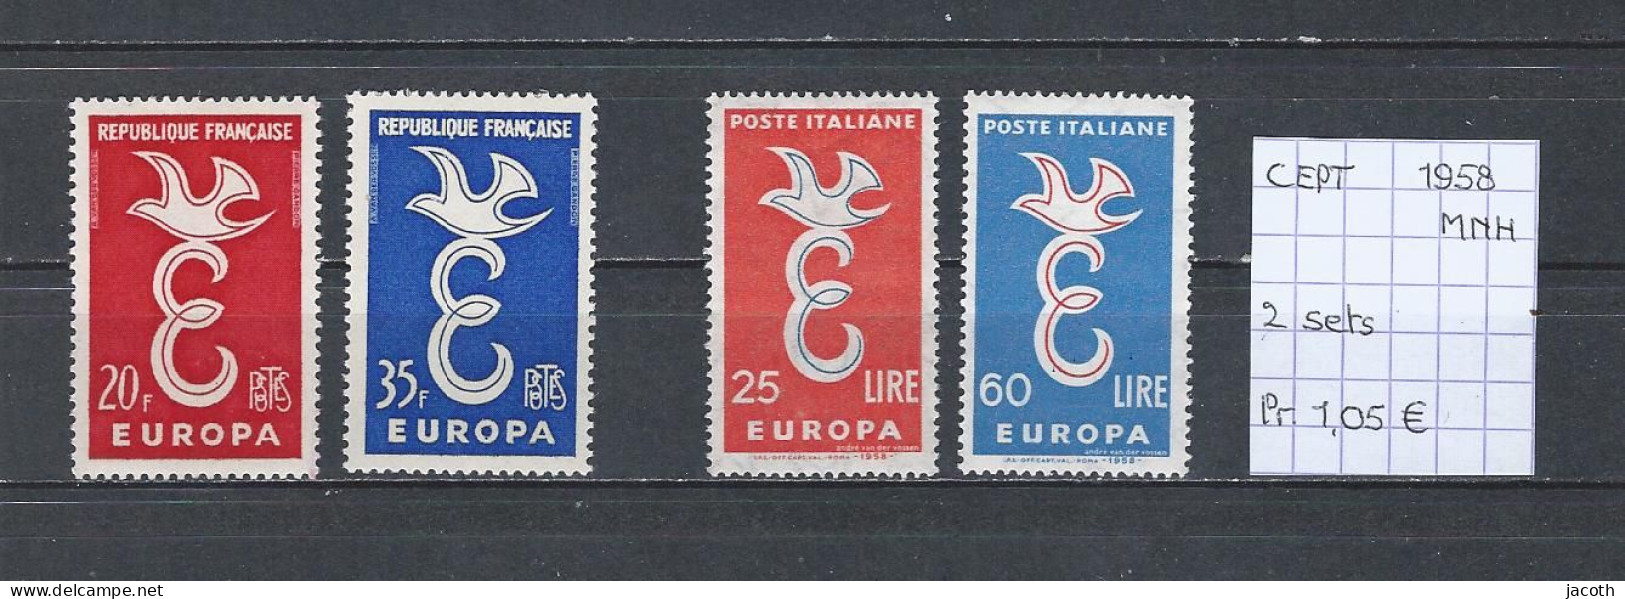 (TJ) Europa CEPT 1958 - 2 Sets (postfris/neuf/MNH) - 1958